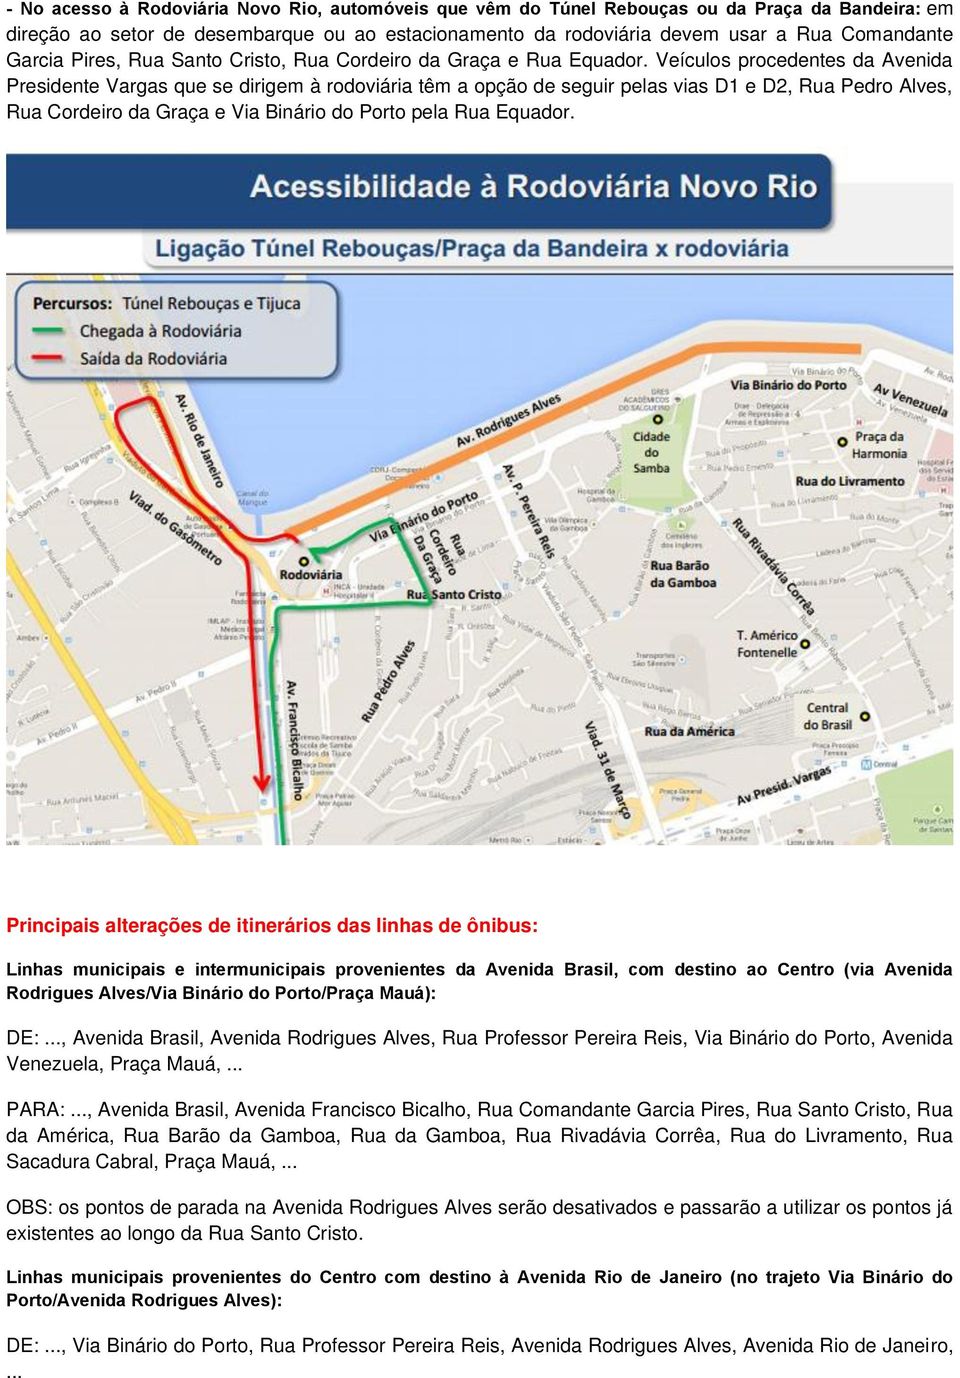 Veículos procedentes da Avenida Presidente Vargas que se dirigem à rodoviária têm a opção de seguir pelas vias D1 e D2, Rua Pedro Alves, Rua Cordeiro da Graça e Via Binário do Porto pela Rua Equador.